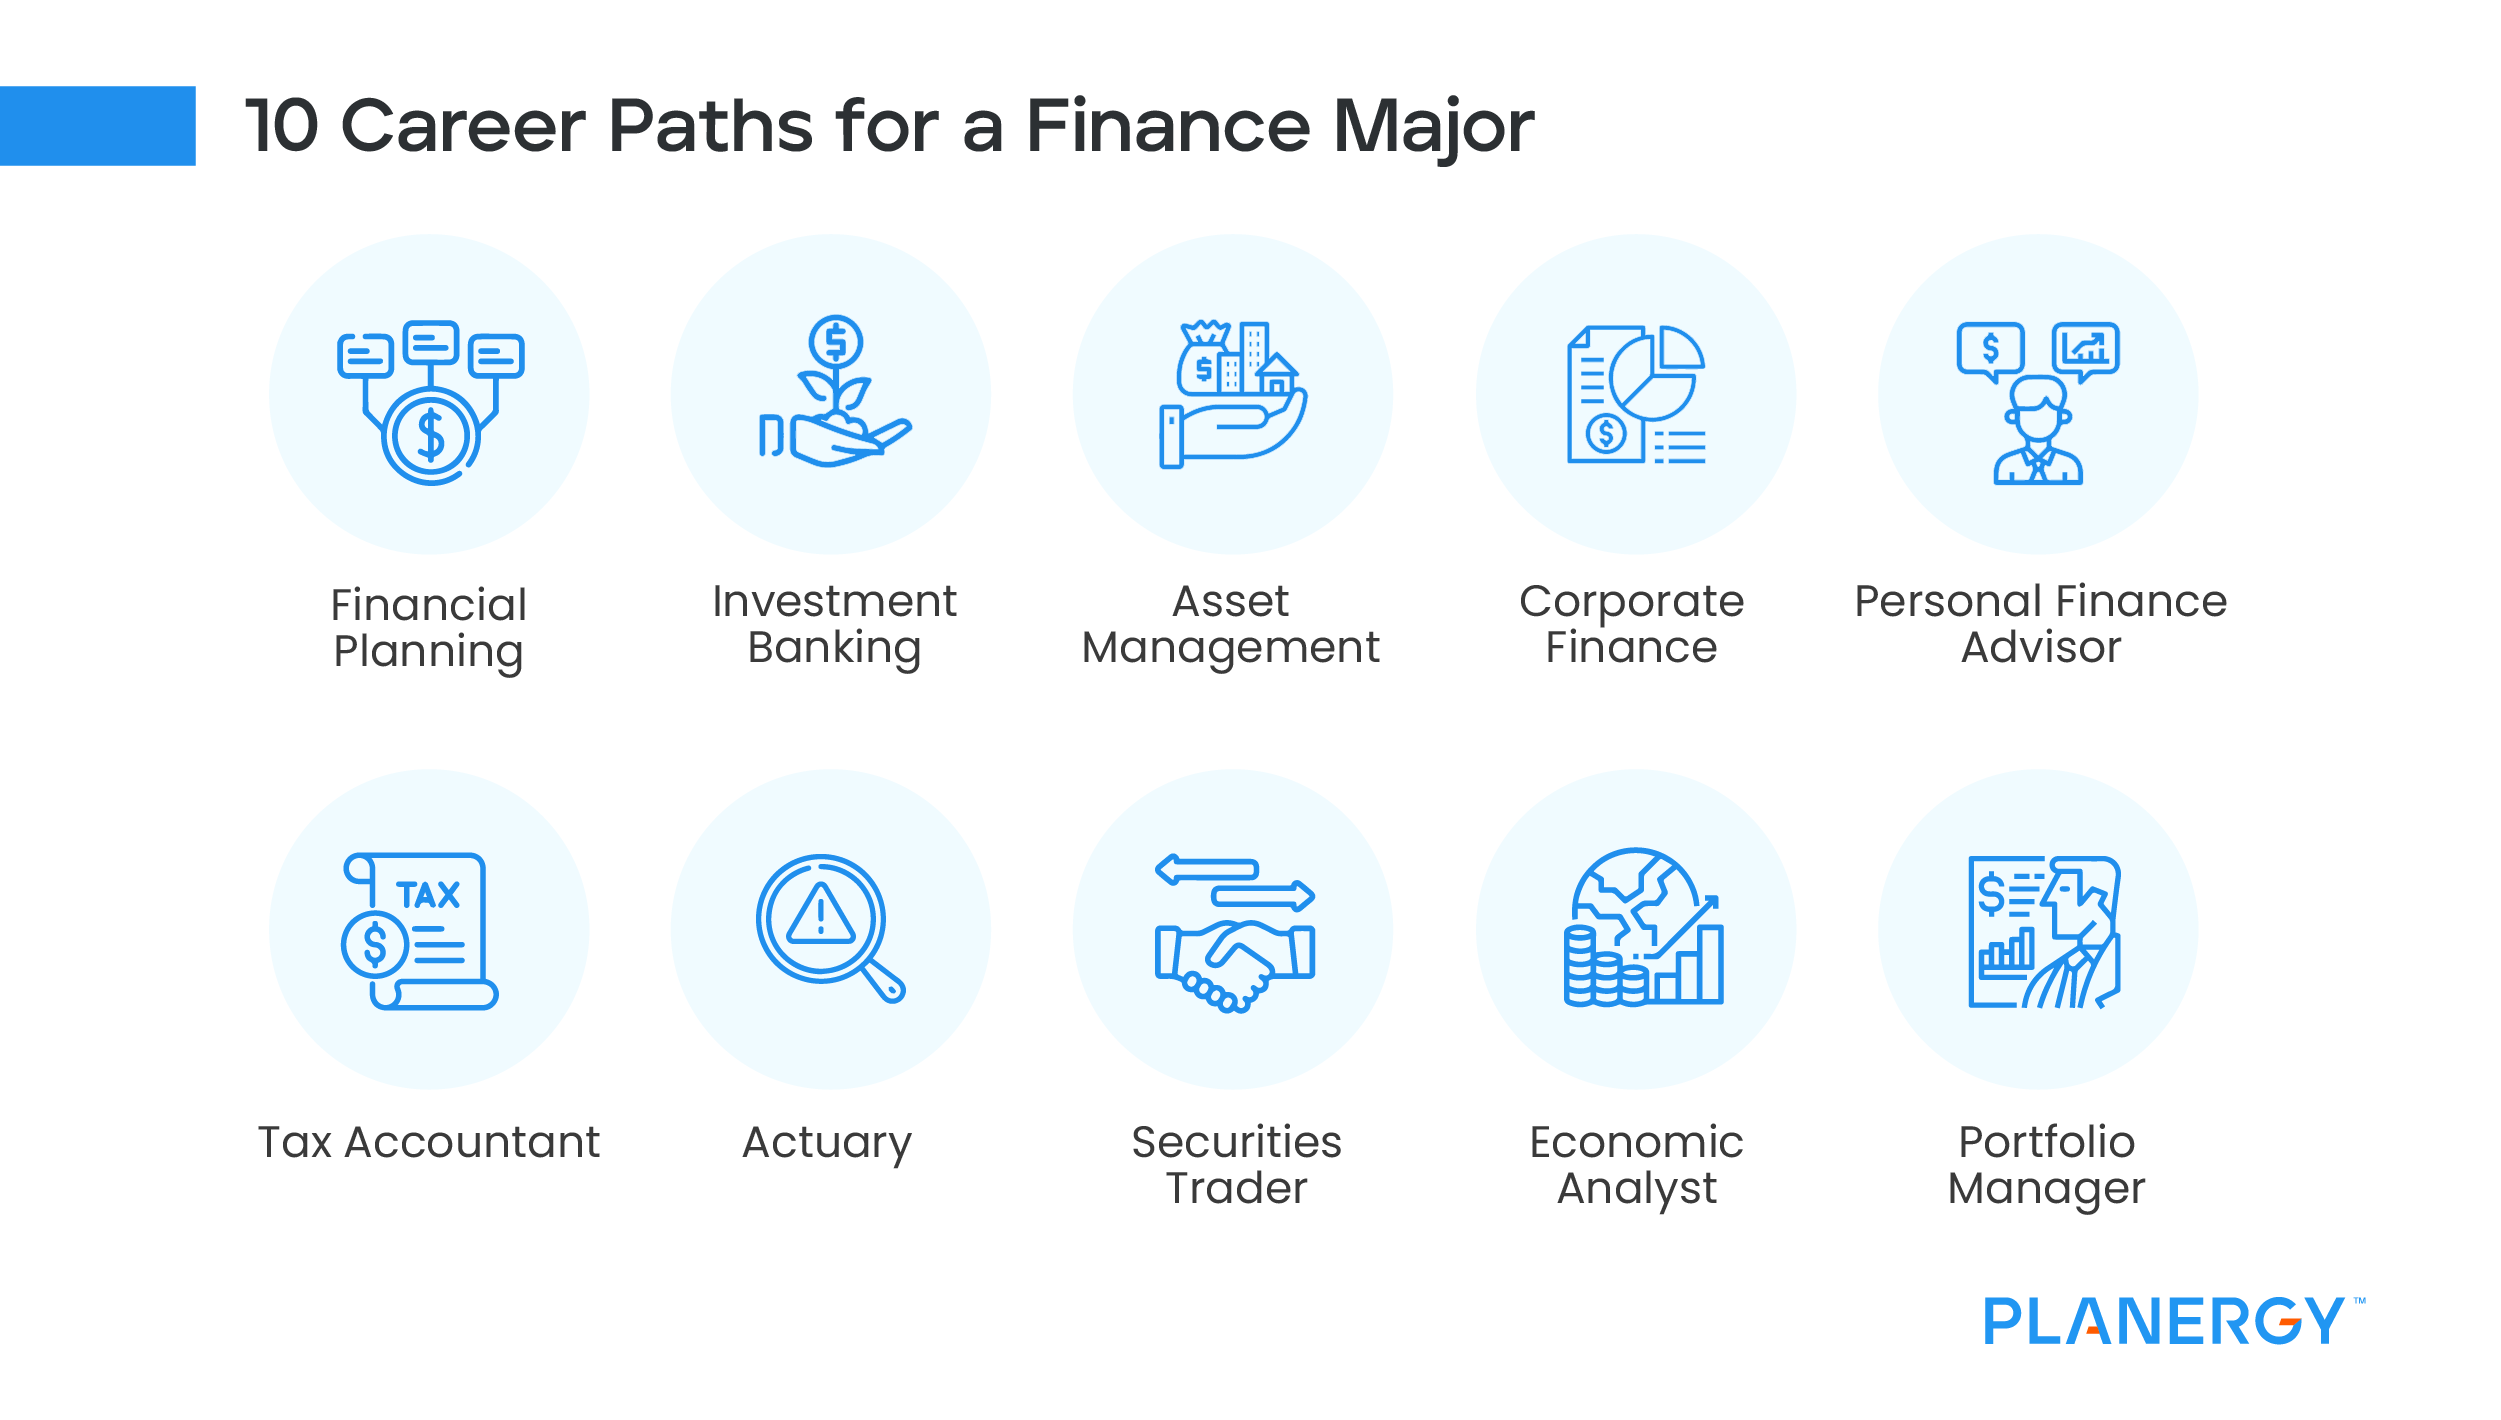 10 Career Paths For a Finance Major